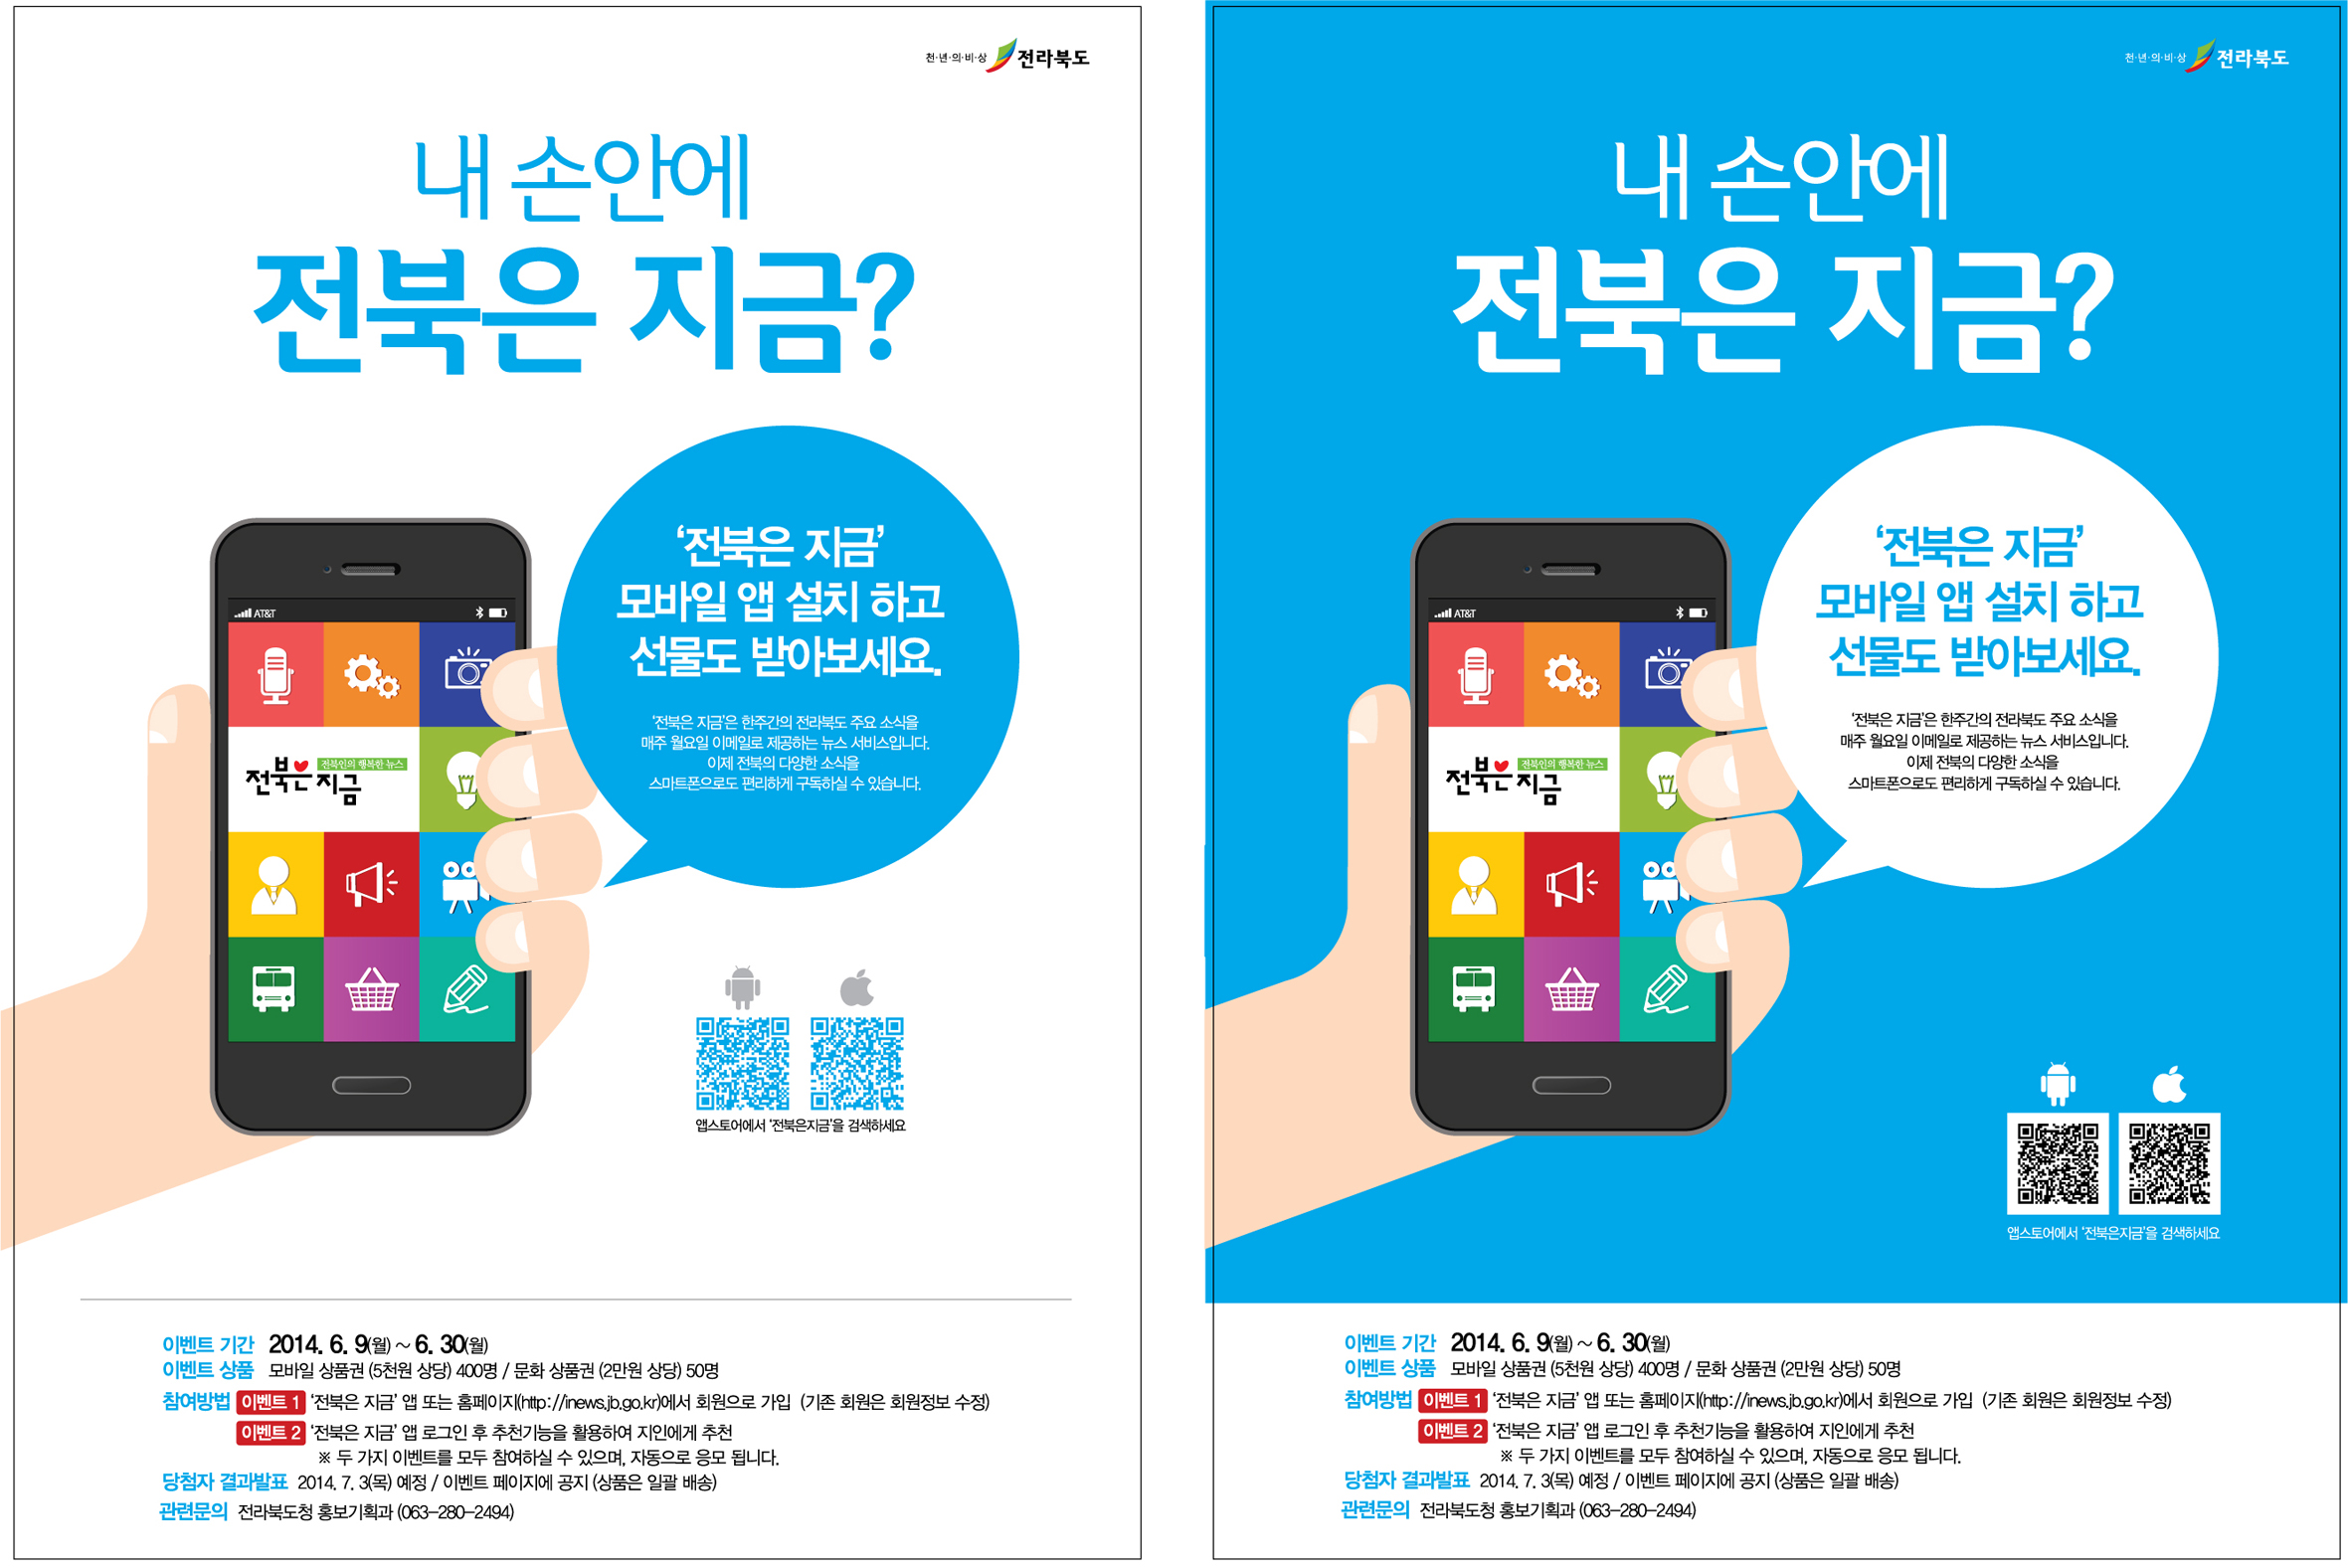 뉴스레터 ‘전북은 지금’ 모바일 앱 출시 안내